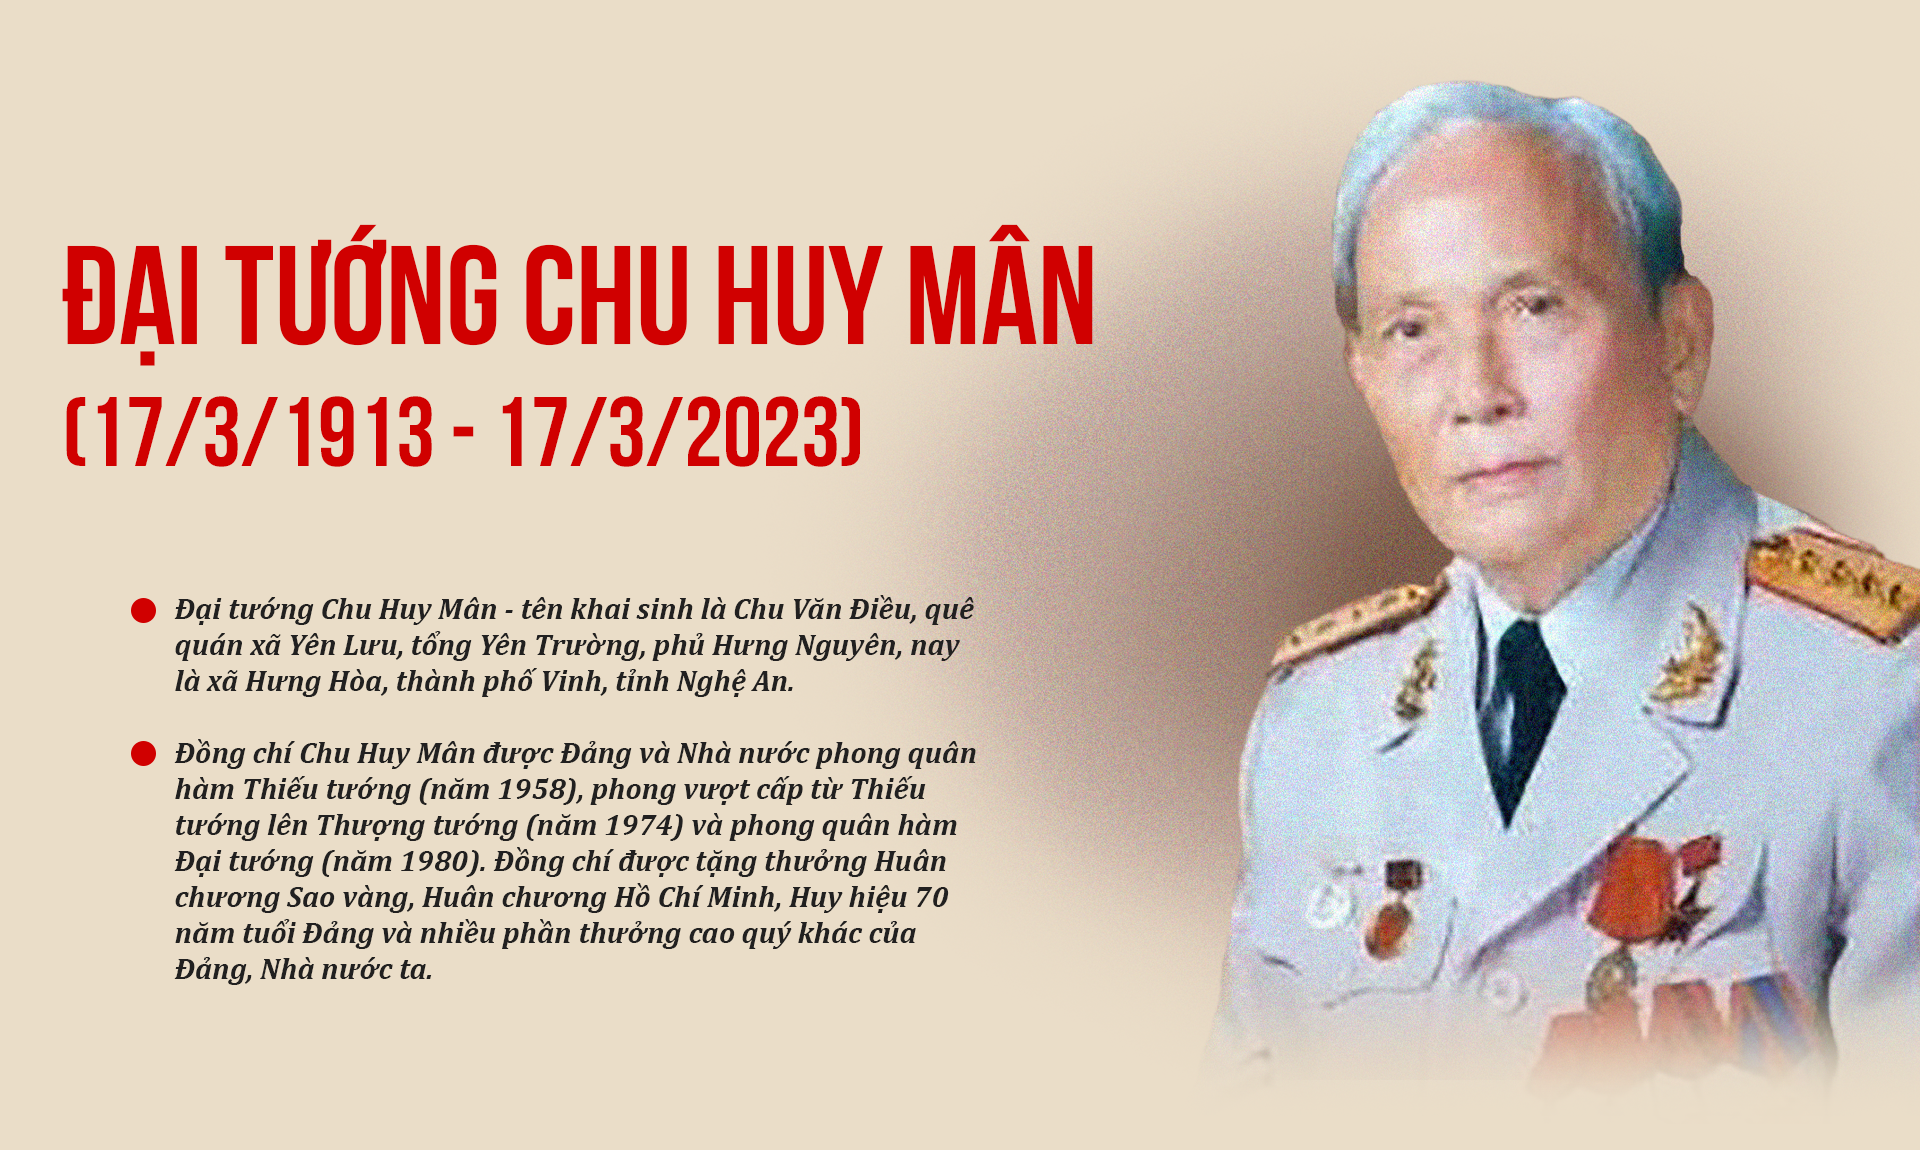 Tuyên truyền kỷ niệm 110 năm Ngày sinh đồng chí Chu Huy Mân, lãnh đạo tiền bối tiêu biểu của Đảng và cách mạng Việt Nam (17/3/1913 - 17/3/2023)